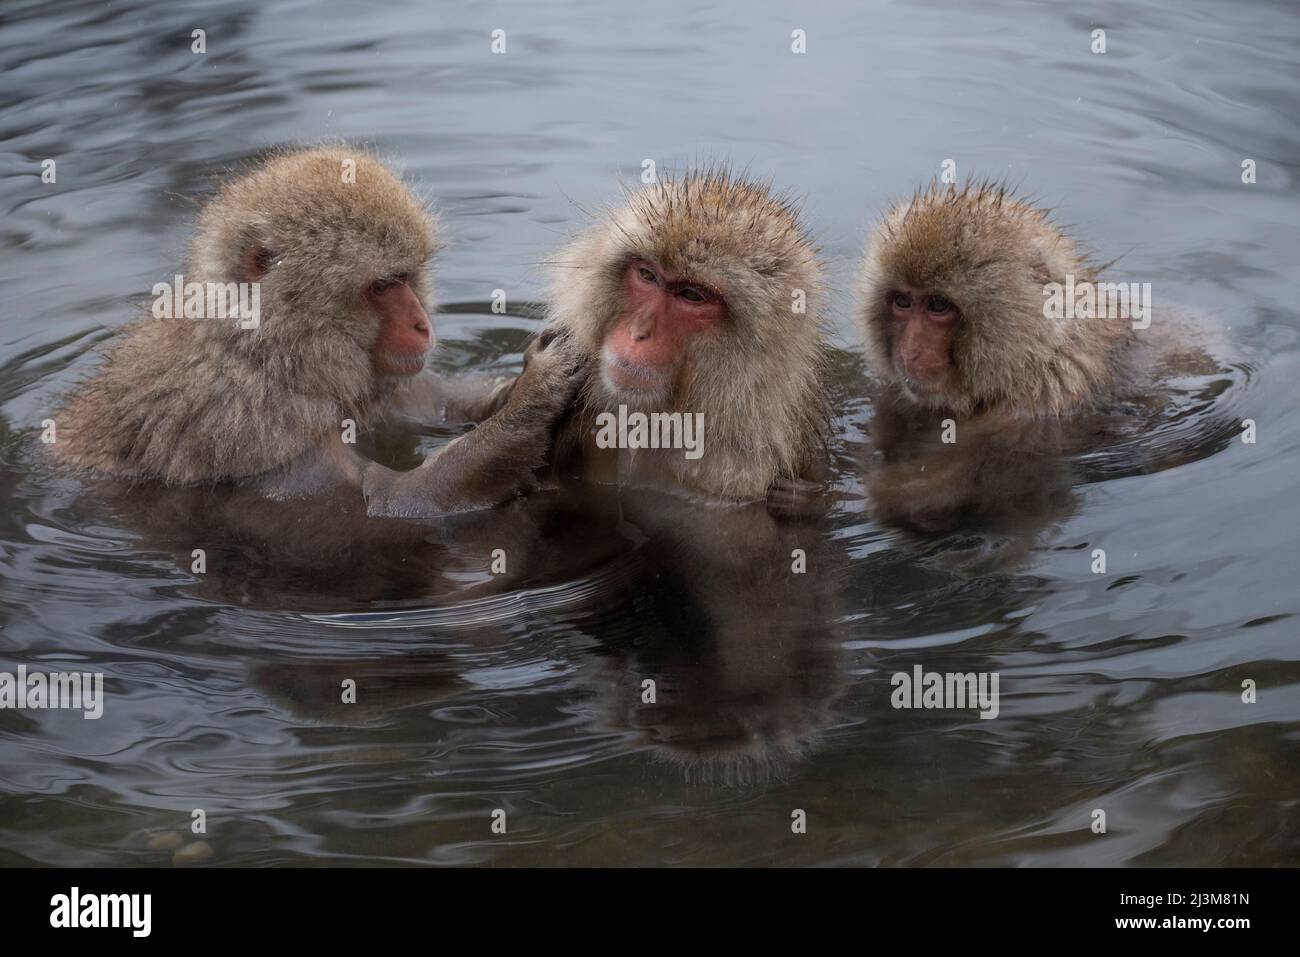 Monos nieves japoneses (Macaca fuscata) en aguas termales. Situado en la base del Parque Nacional Joshinetsu Kogen, el Parque de Monos de Jigokudani... Foto de stock